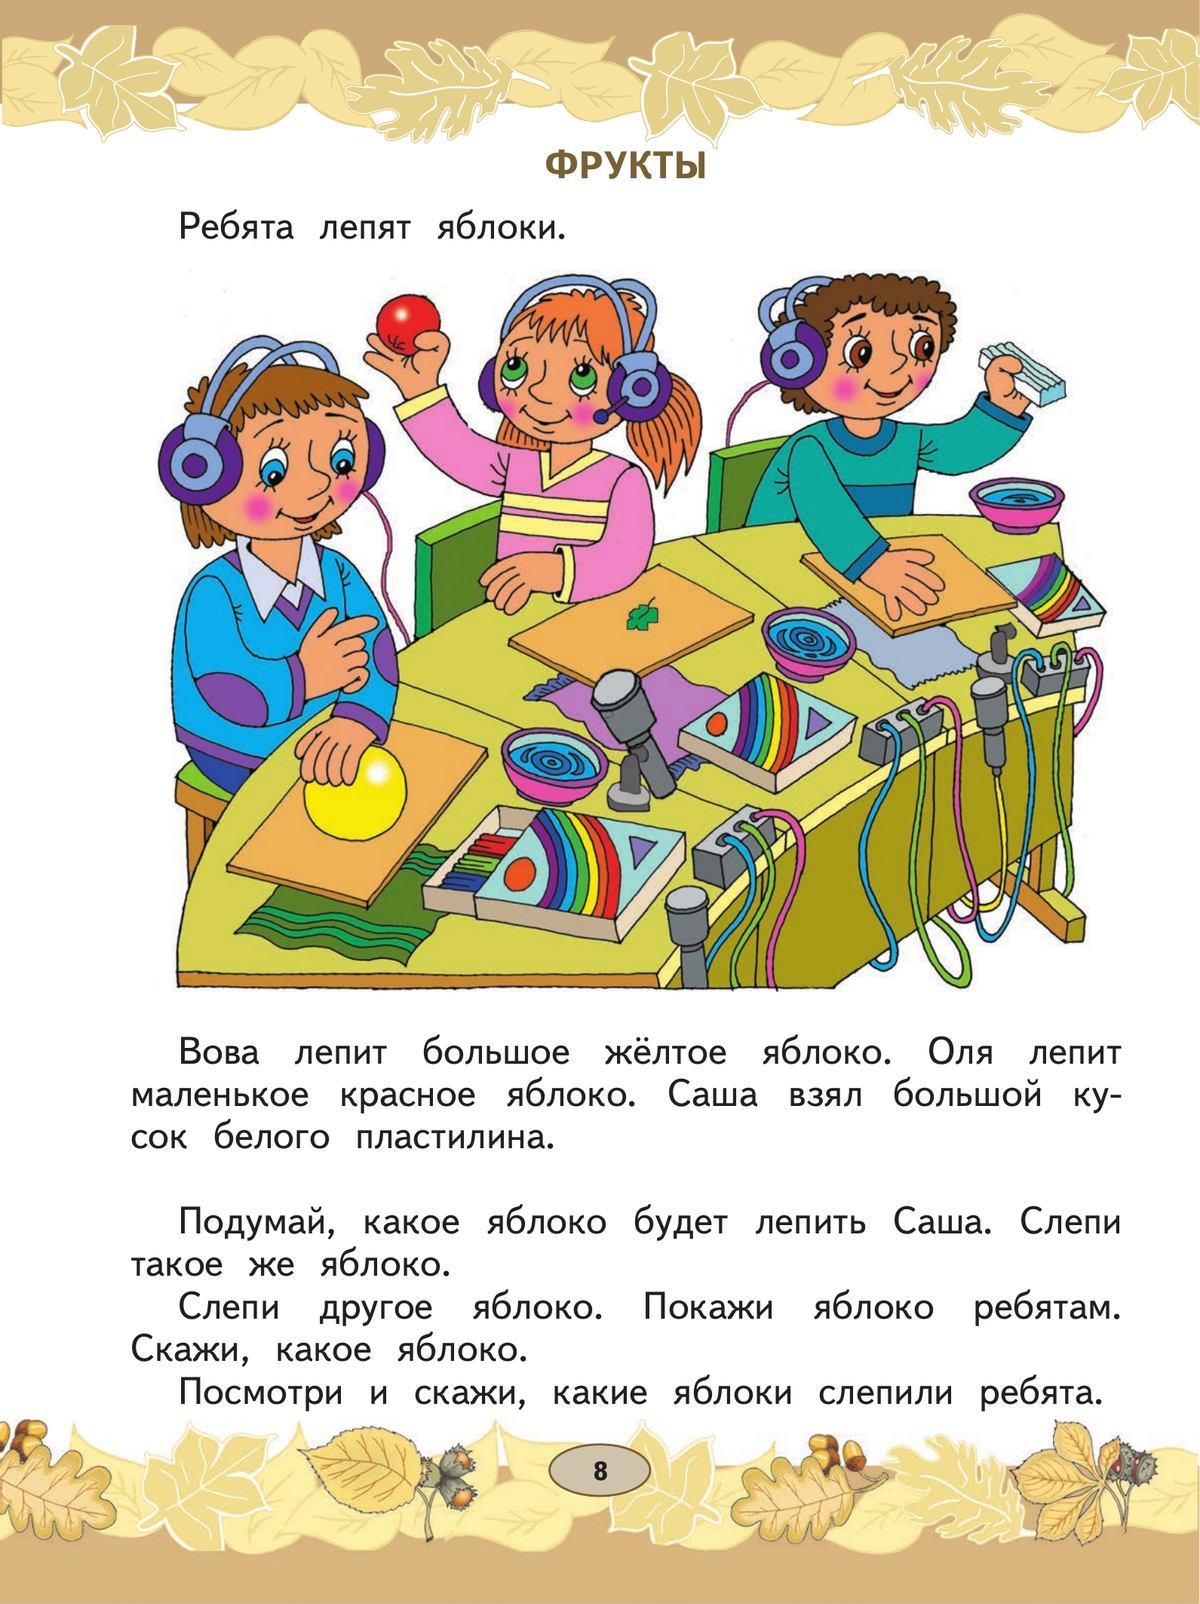 Русский язык. Развитие речи. 1 класс. Учебник. В 2 ч. Часть 1 (для глухих обучающихся) 10